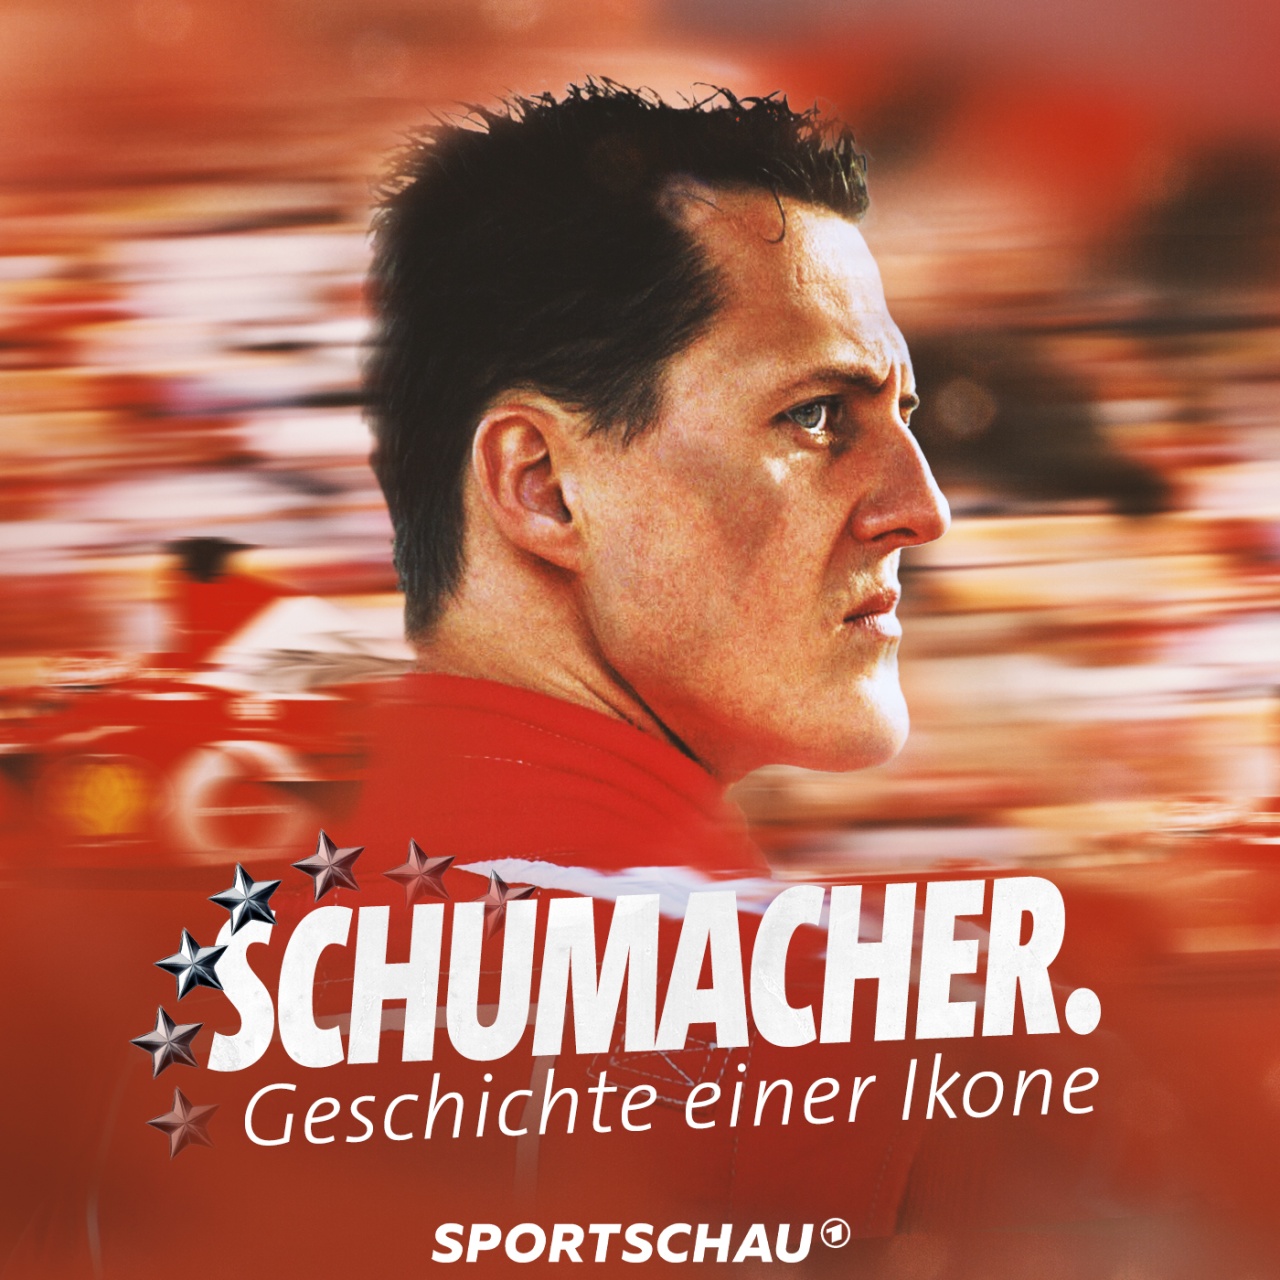 Erfolgreicher Start für Being Michael Schumacher in der ARD Mediathek, Podcast